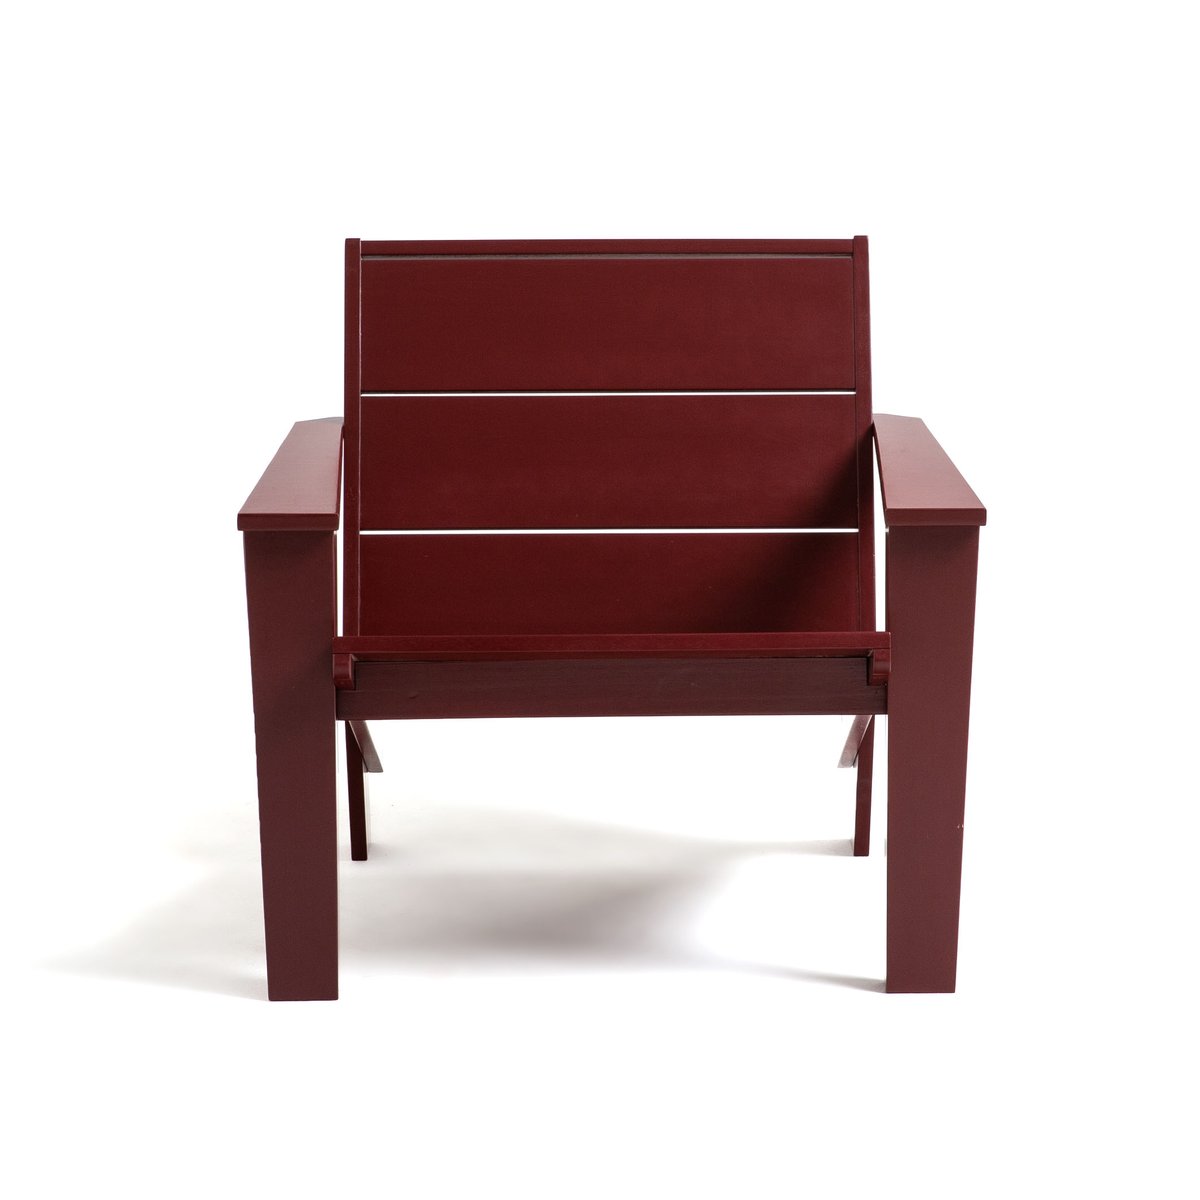 Кресло La Redoute В стиле адирондак из акации с масляным покрытием  Rphir единый размер красный - фото 2